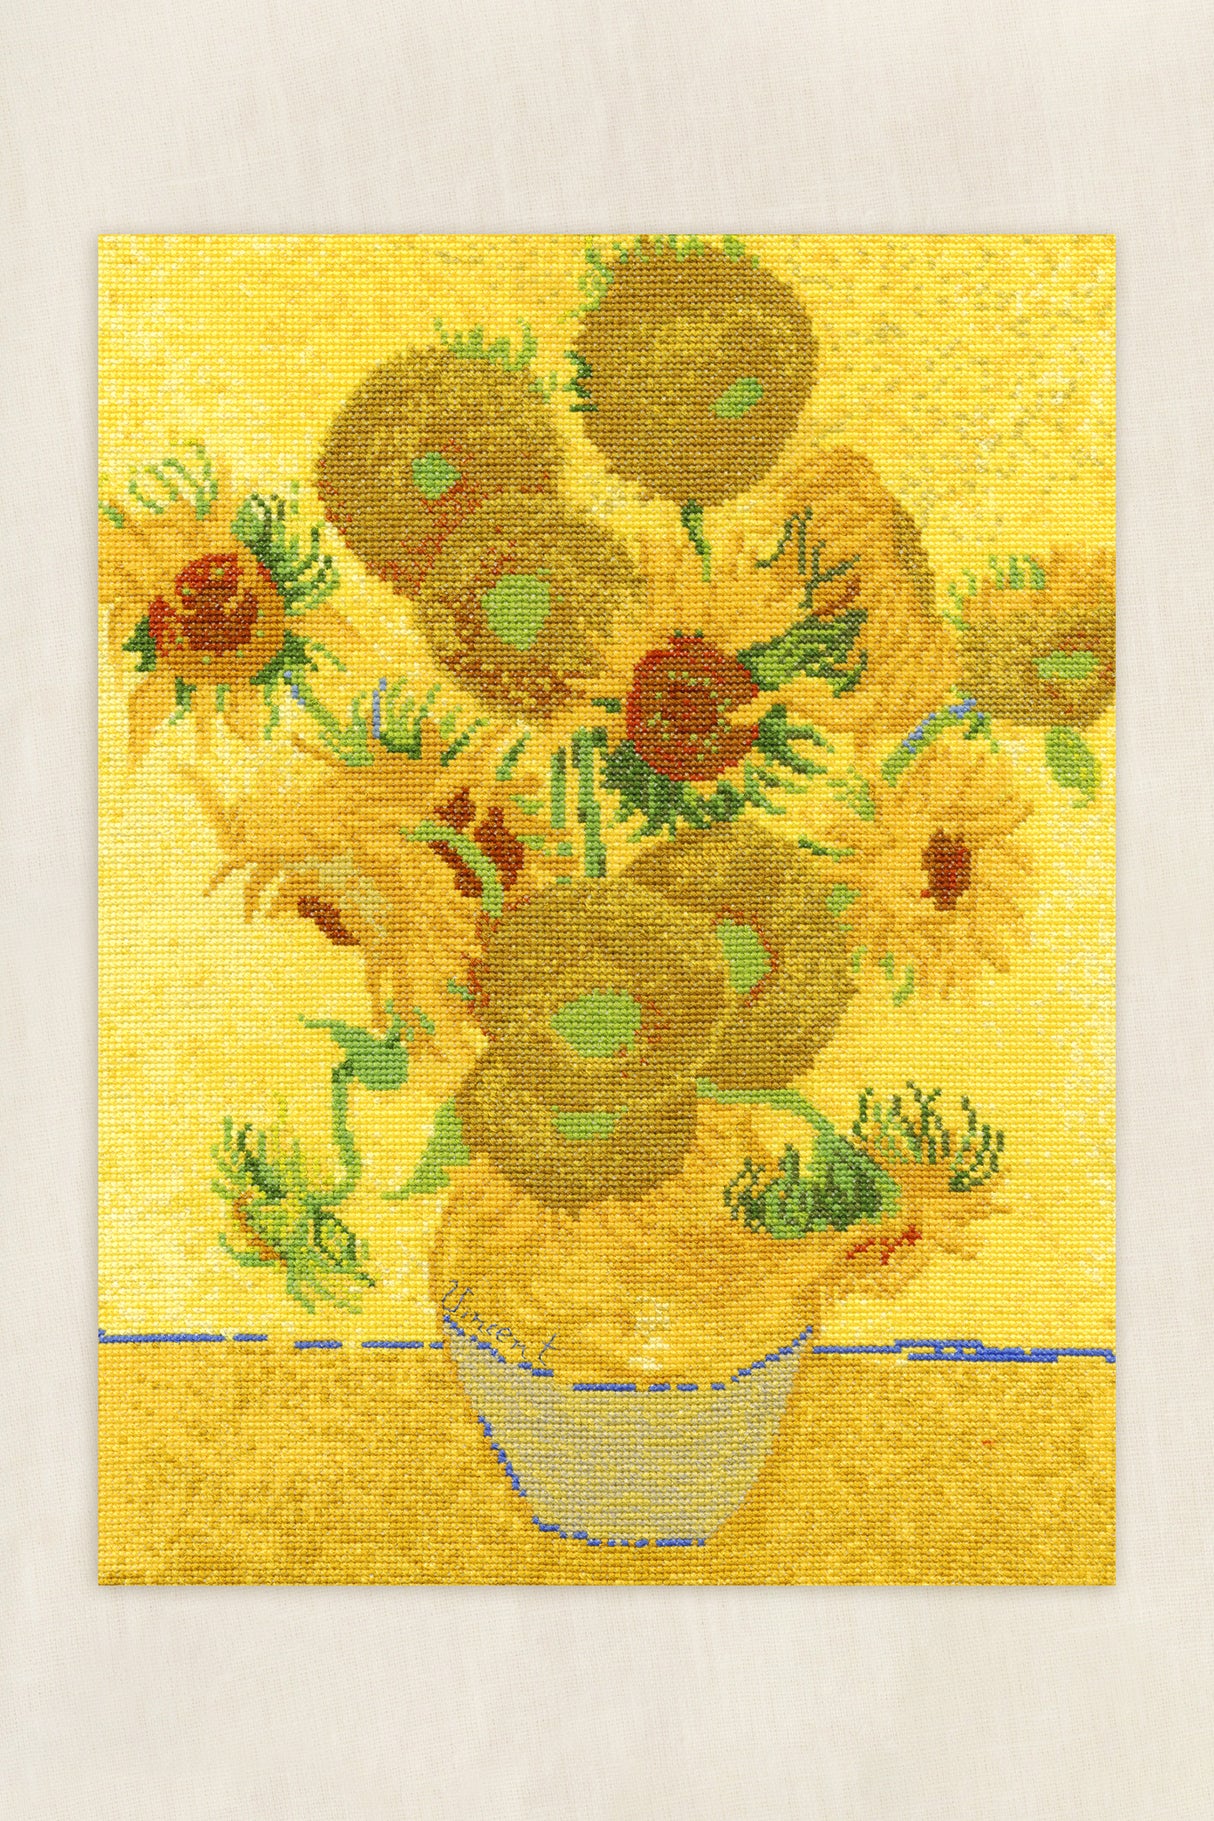 Kit de Punto de Cruz "Girasoles de Van Gogh" - The National Gallery, Avanzado de DMC